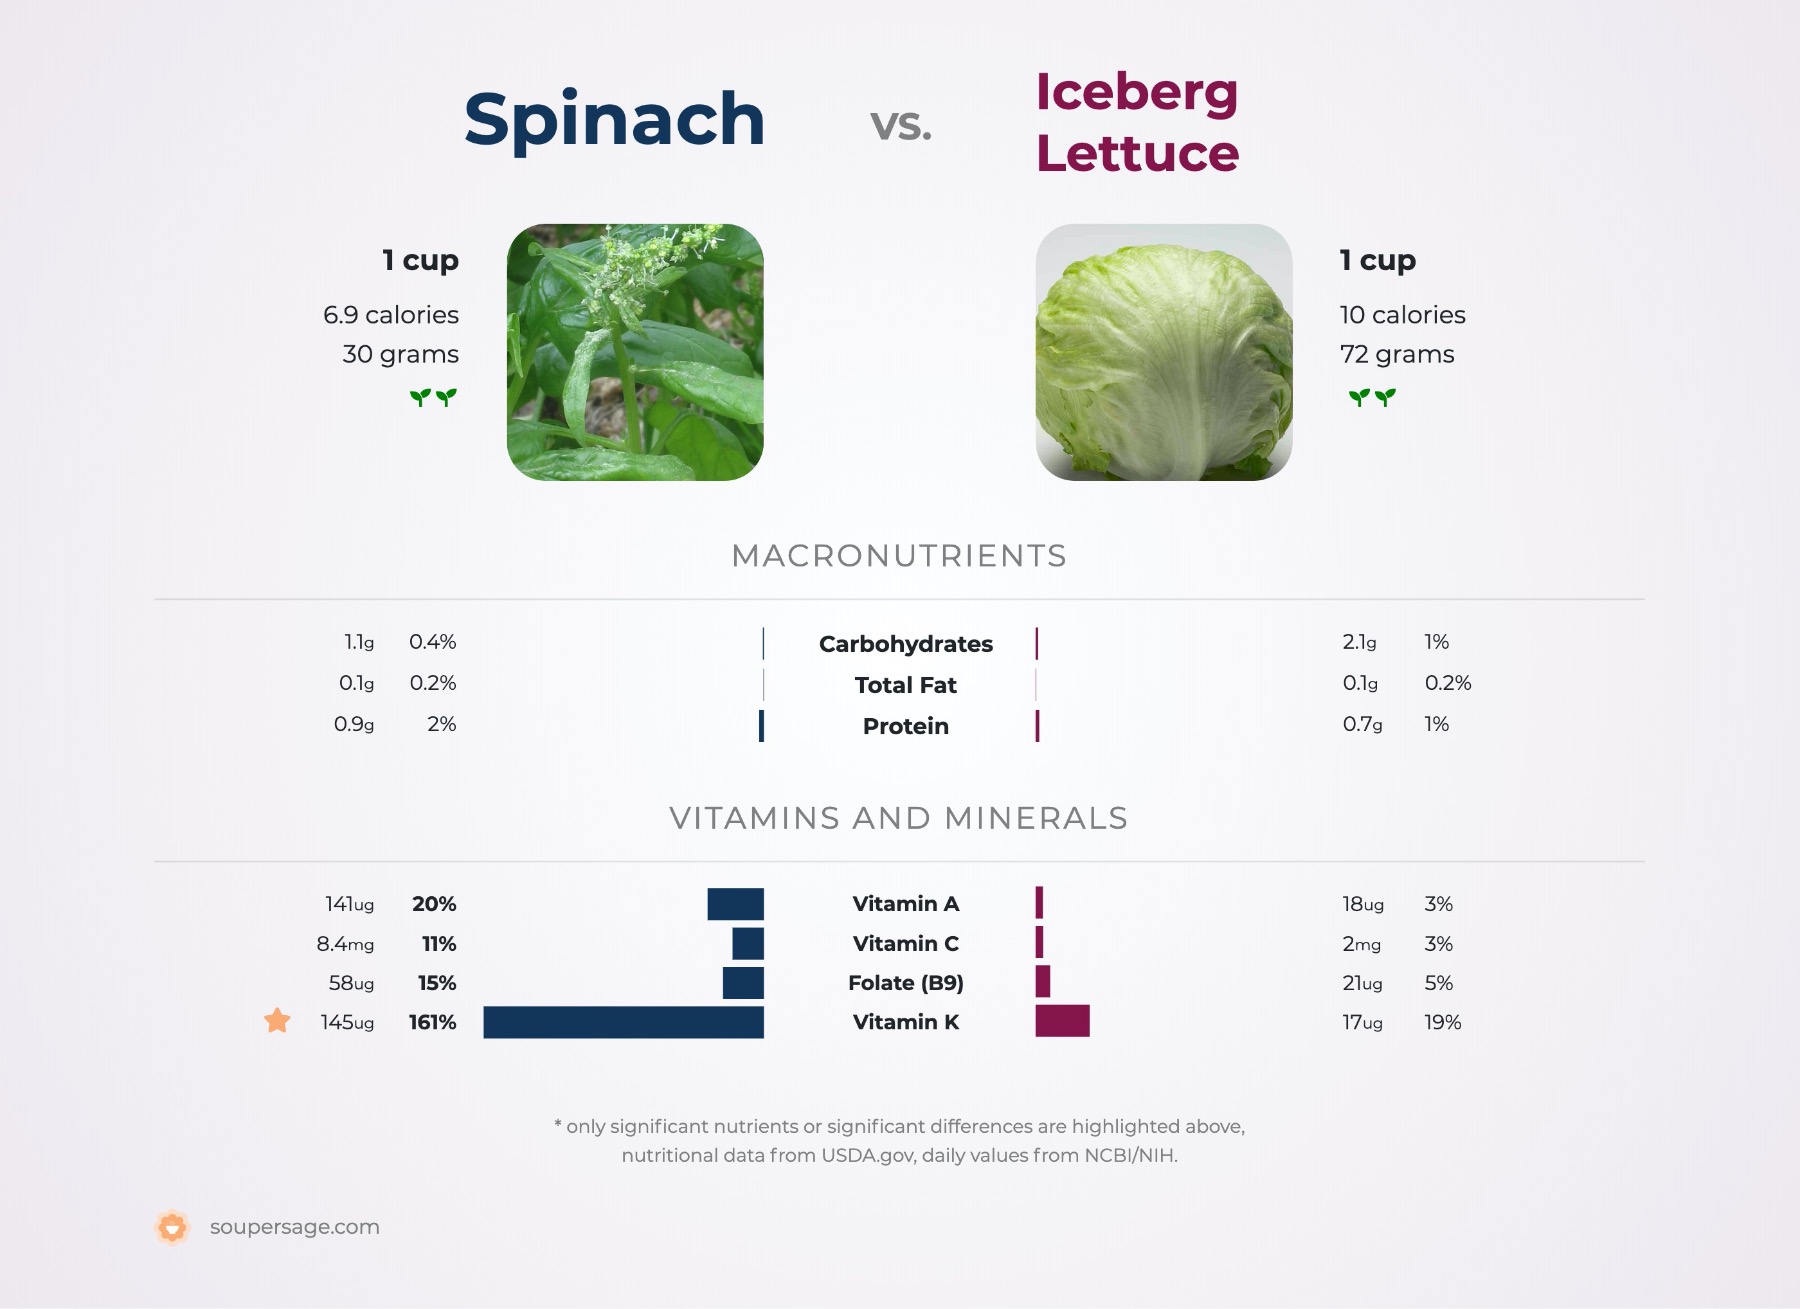 nutrition comparison of iceberg lettuce vs. spinach